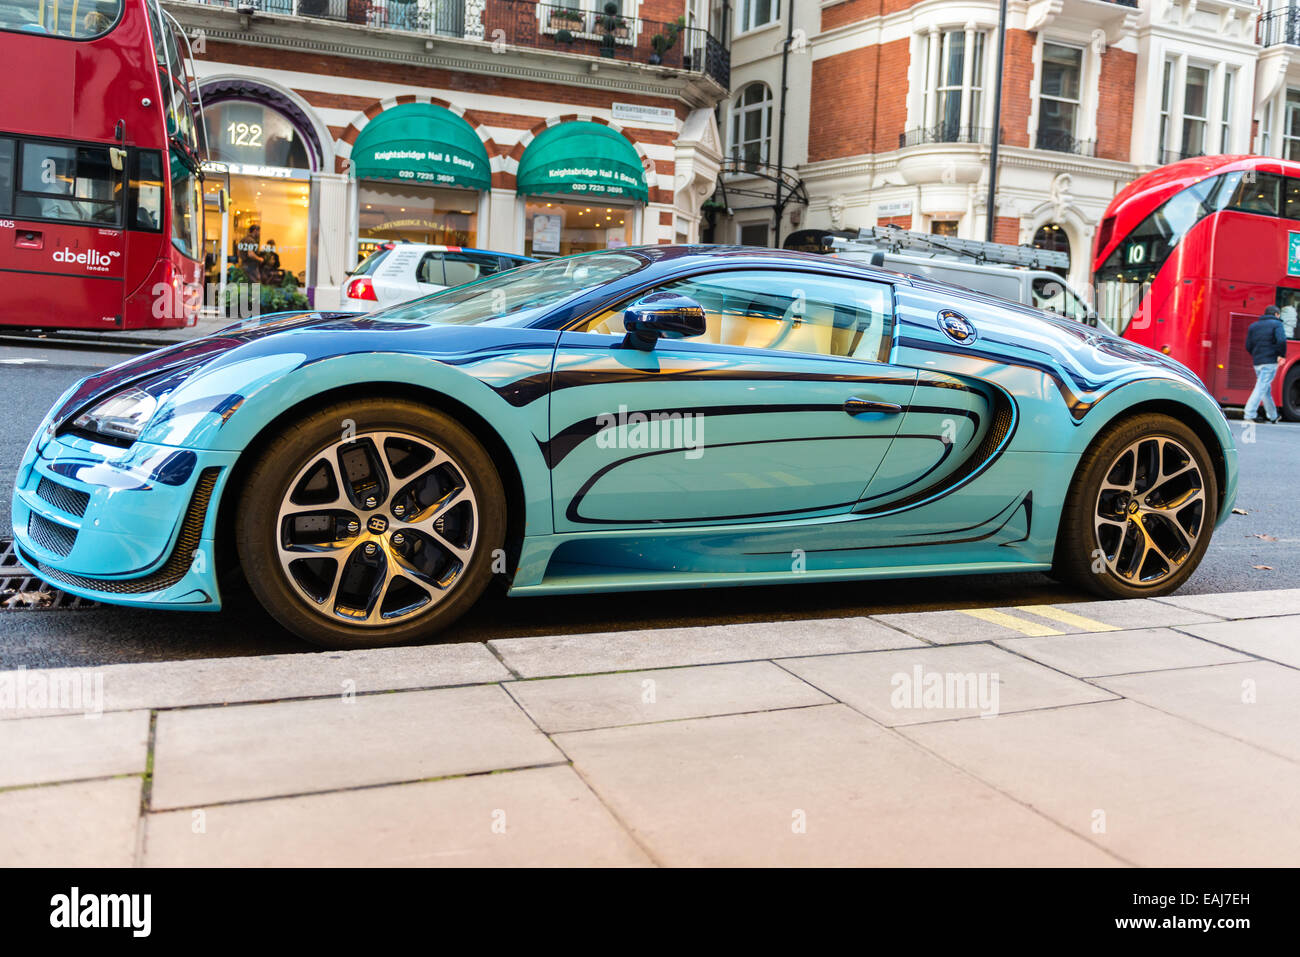 Bugatti Veyron parked on the street in Knightsbridge, London Stock Photo